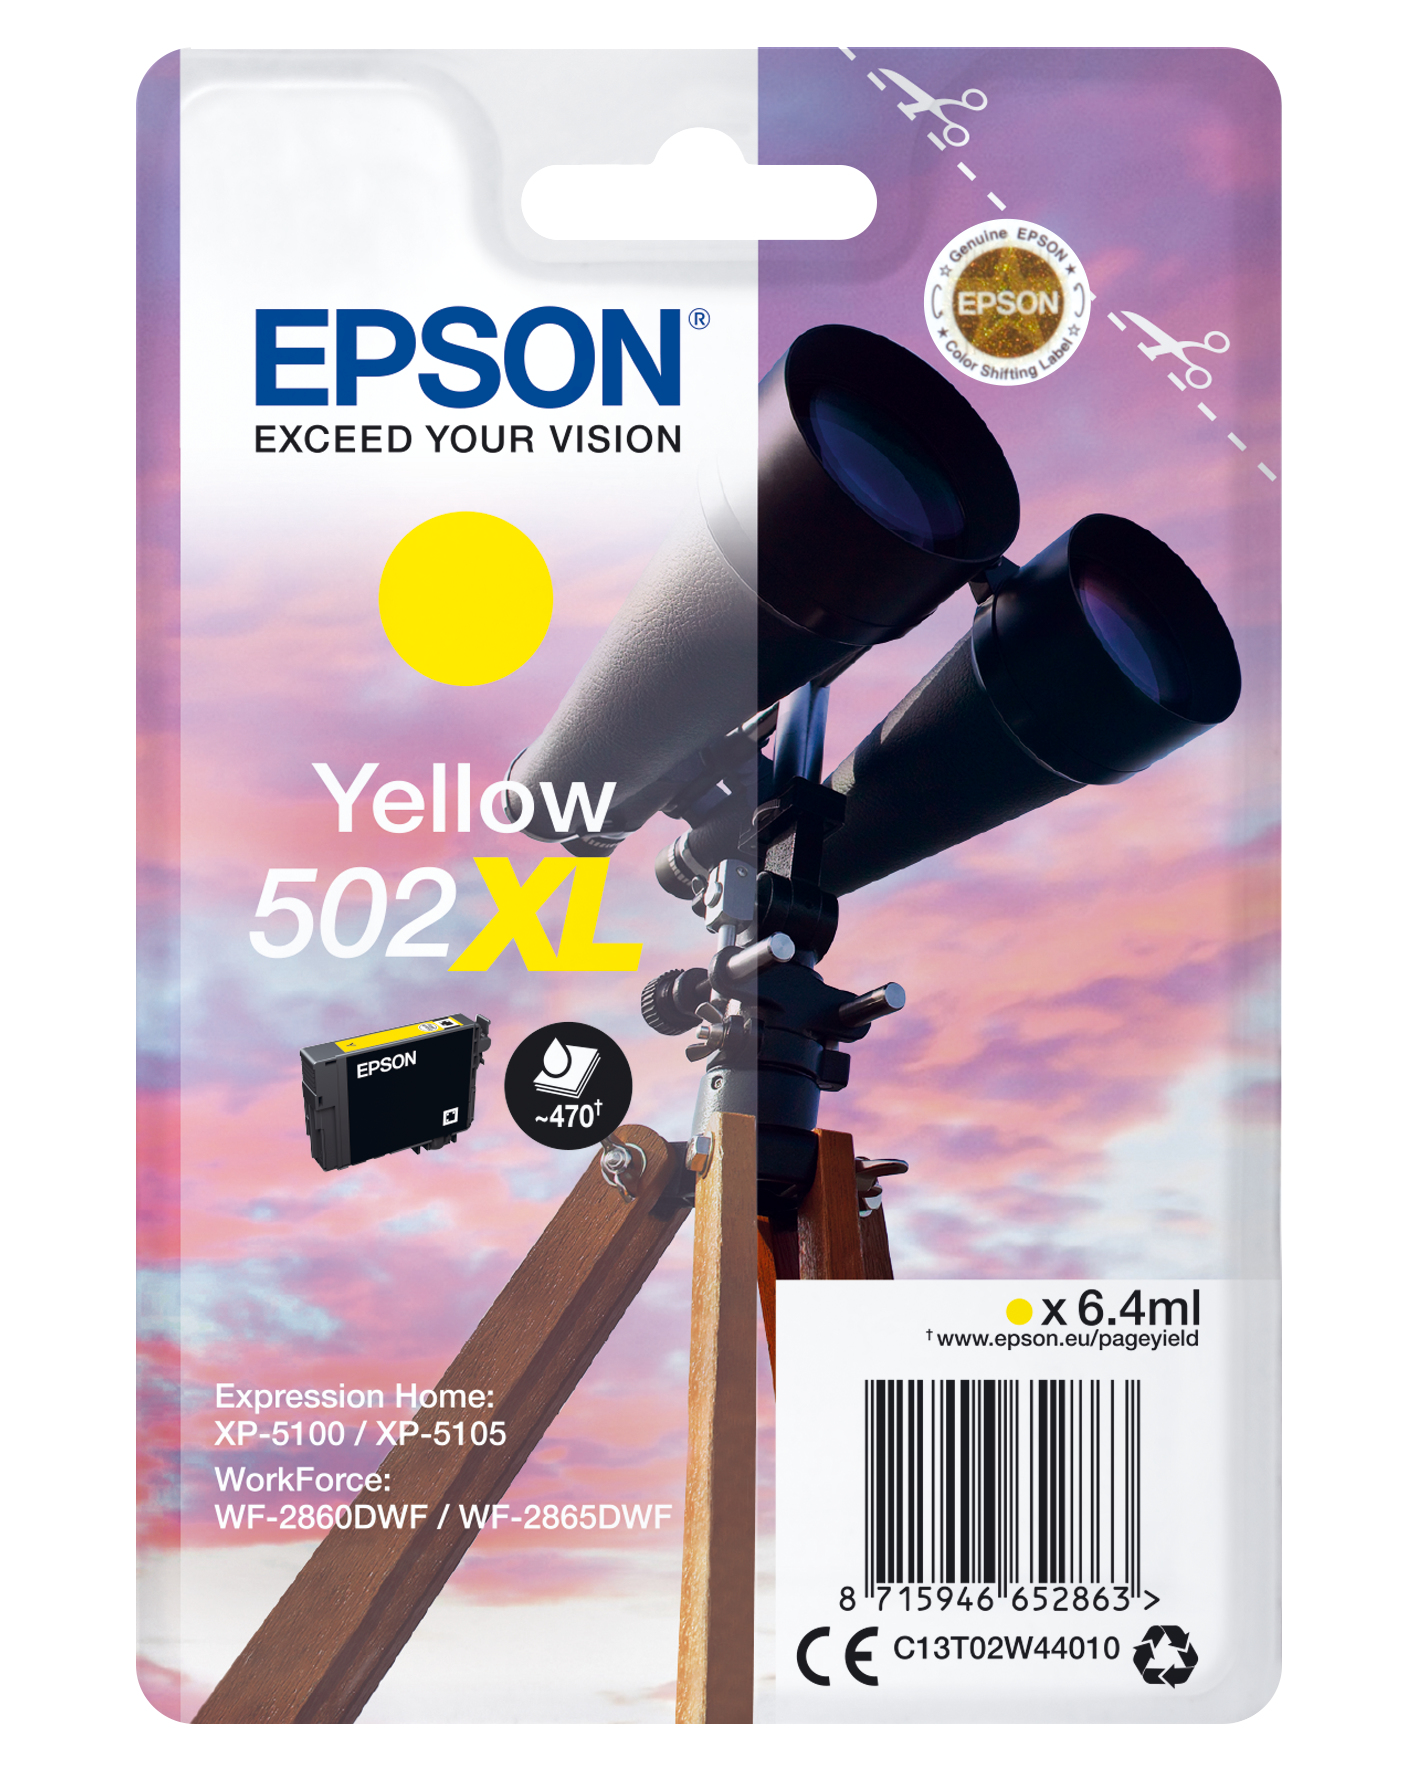 Binoculars Singlepack Yellow Xl Epson Consumer Ink S1 C13t02w44010 8715946652863